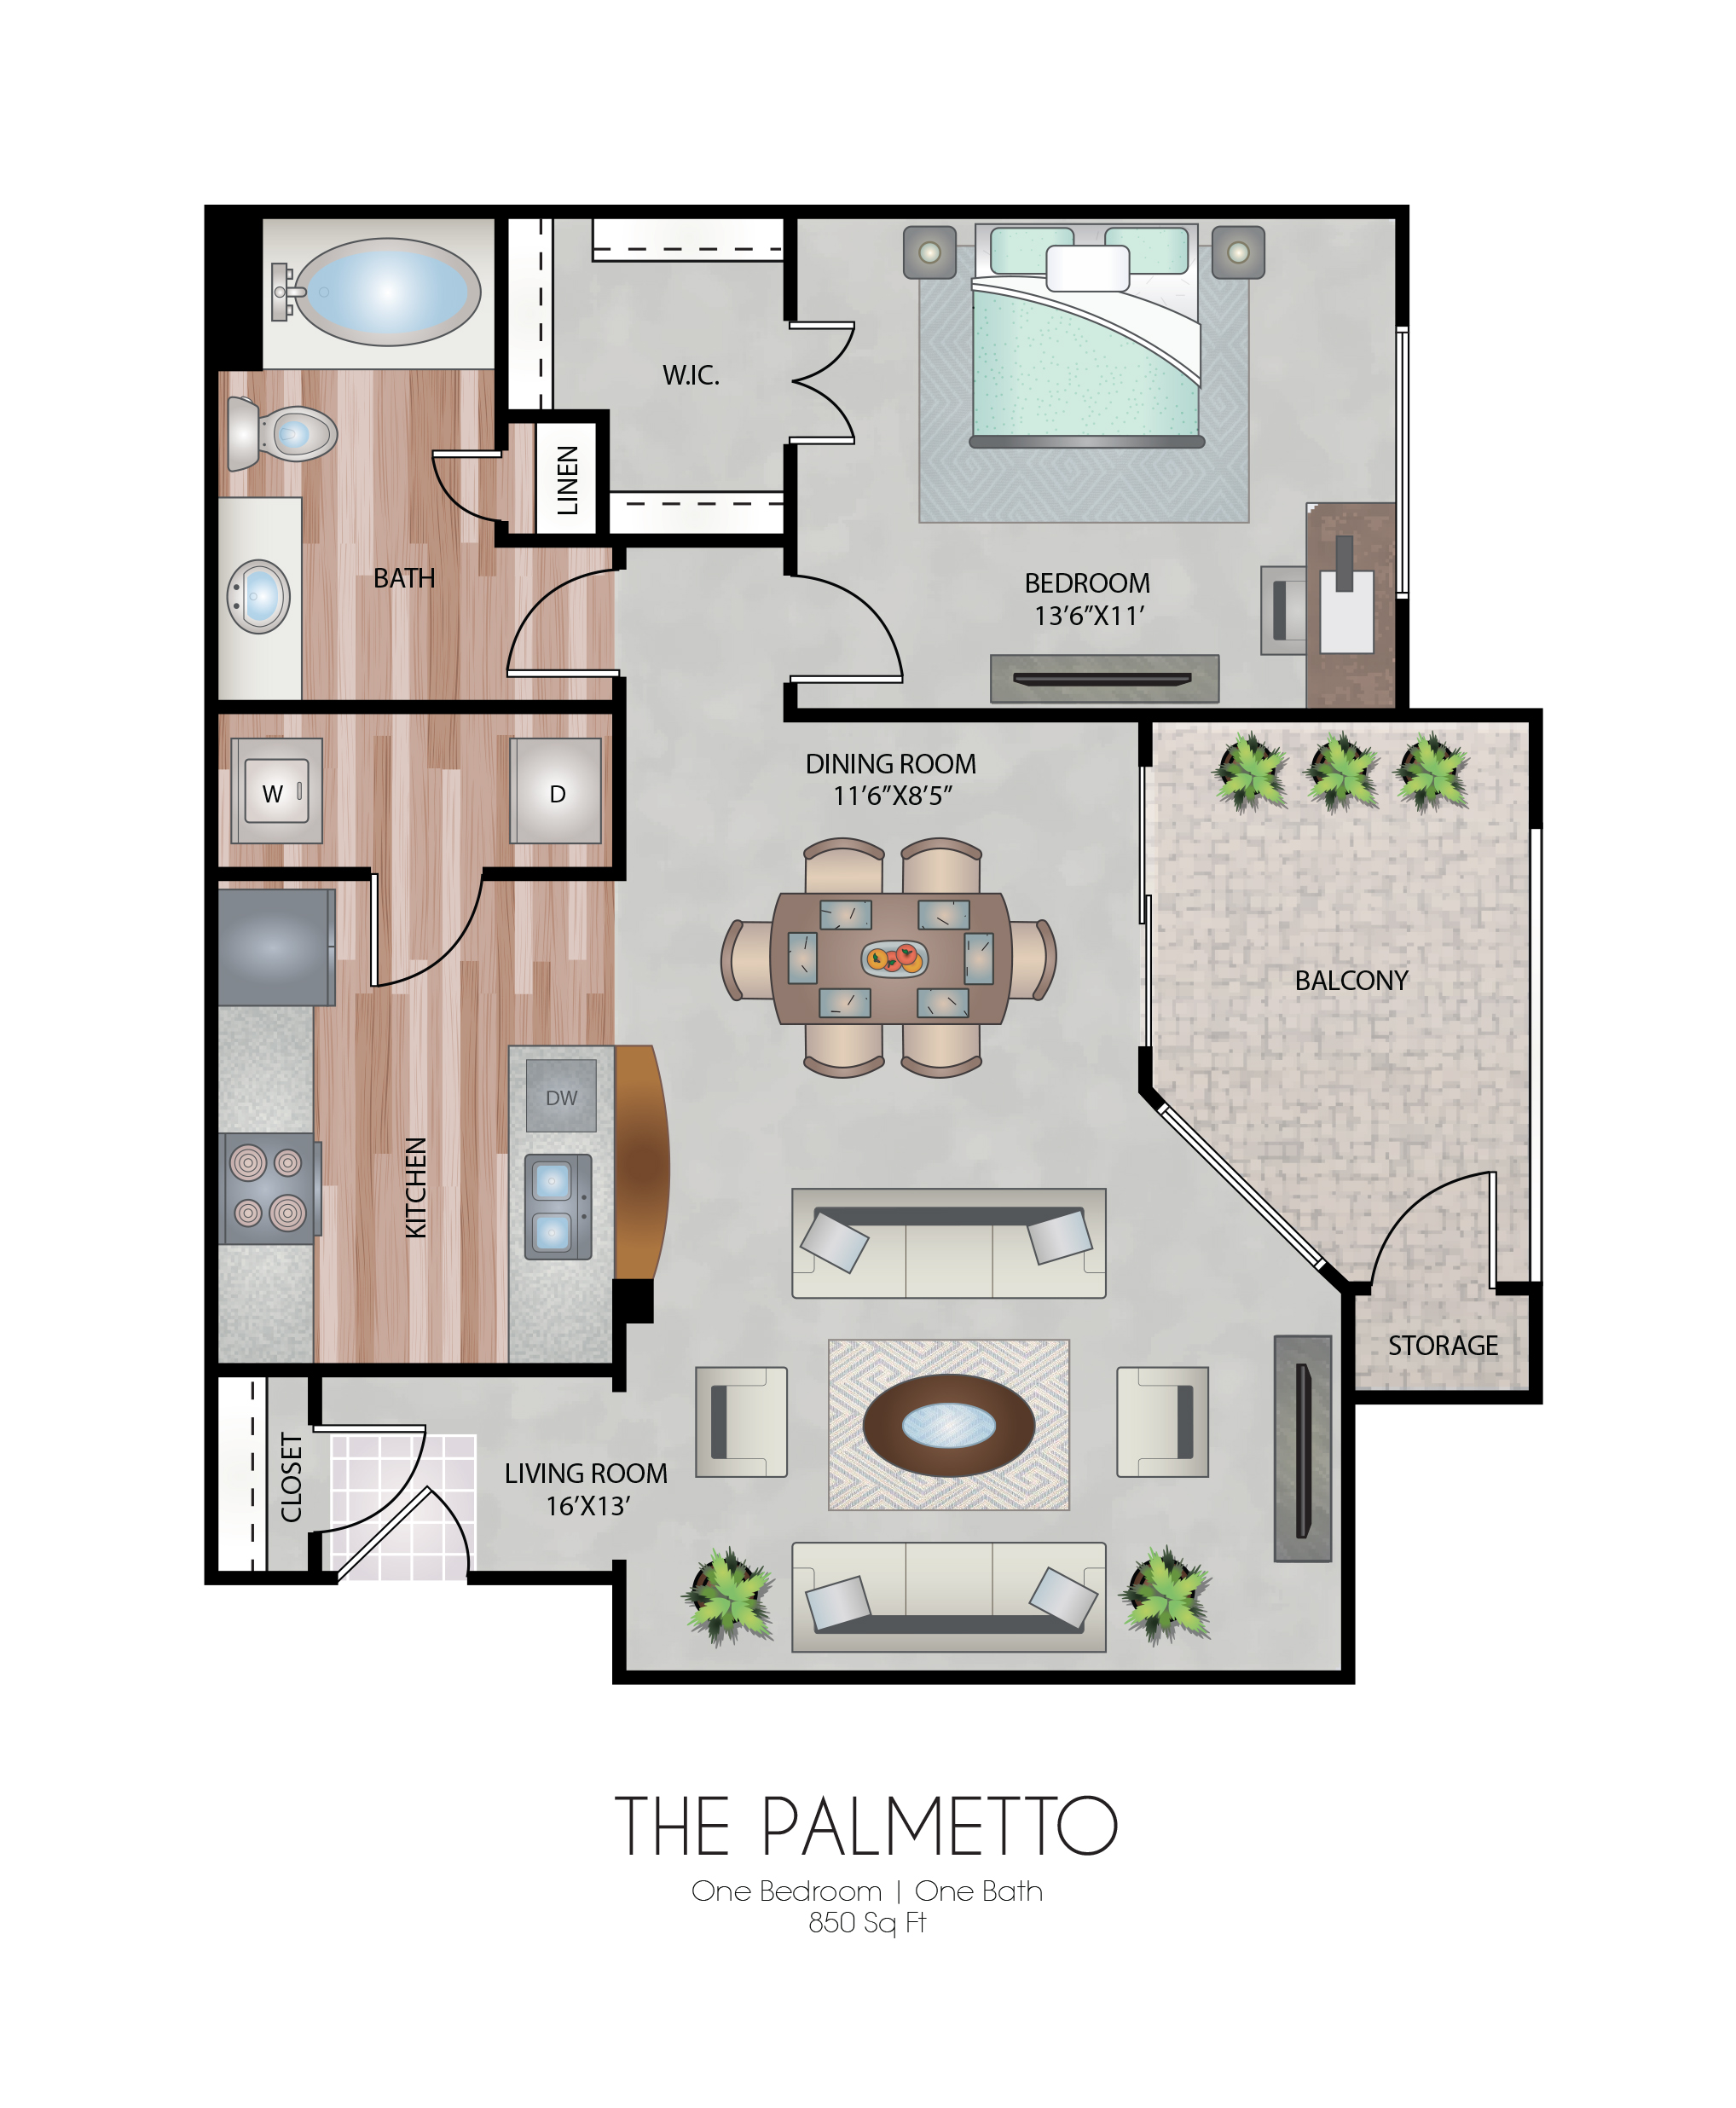 Informative Picture of The Palmetto